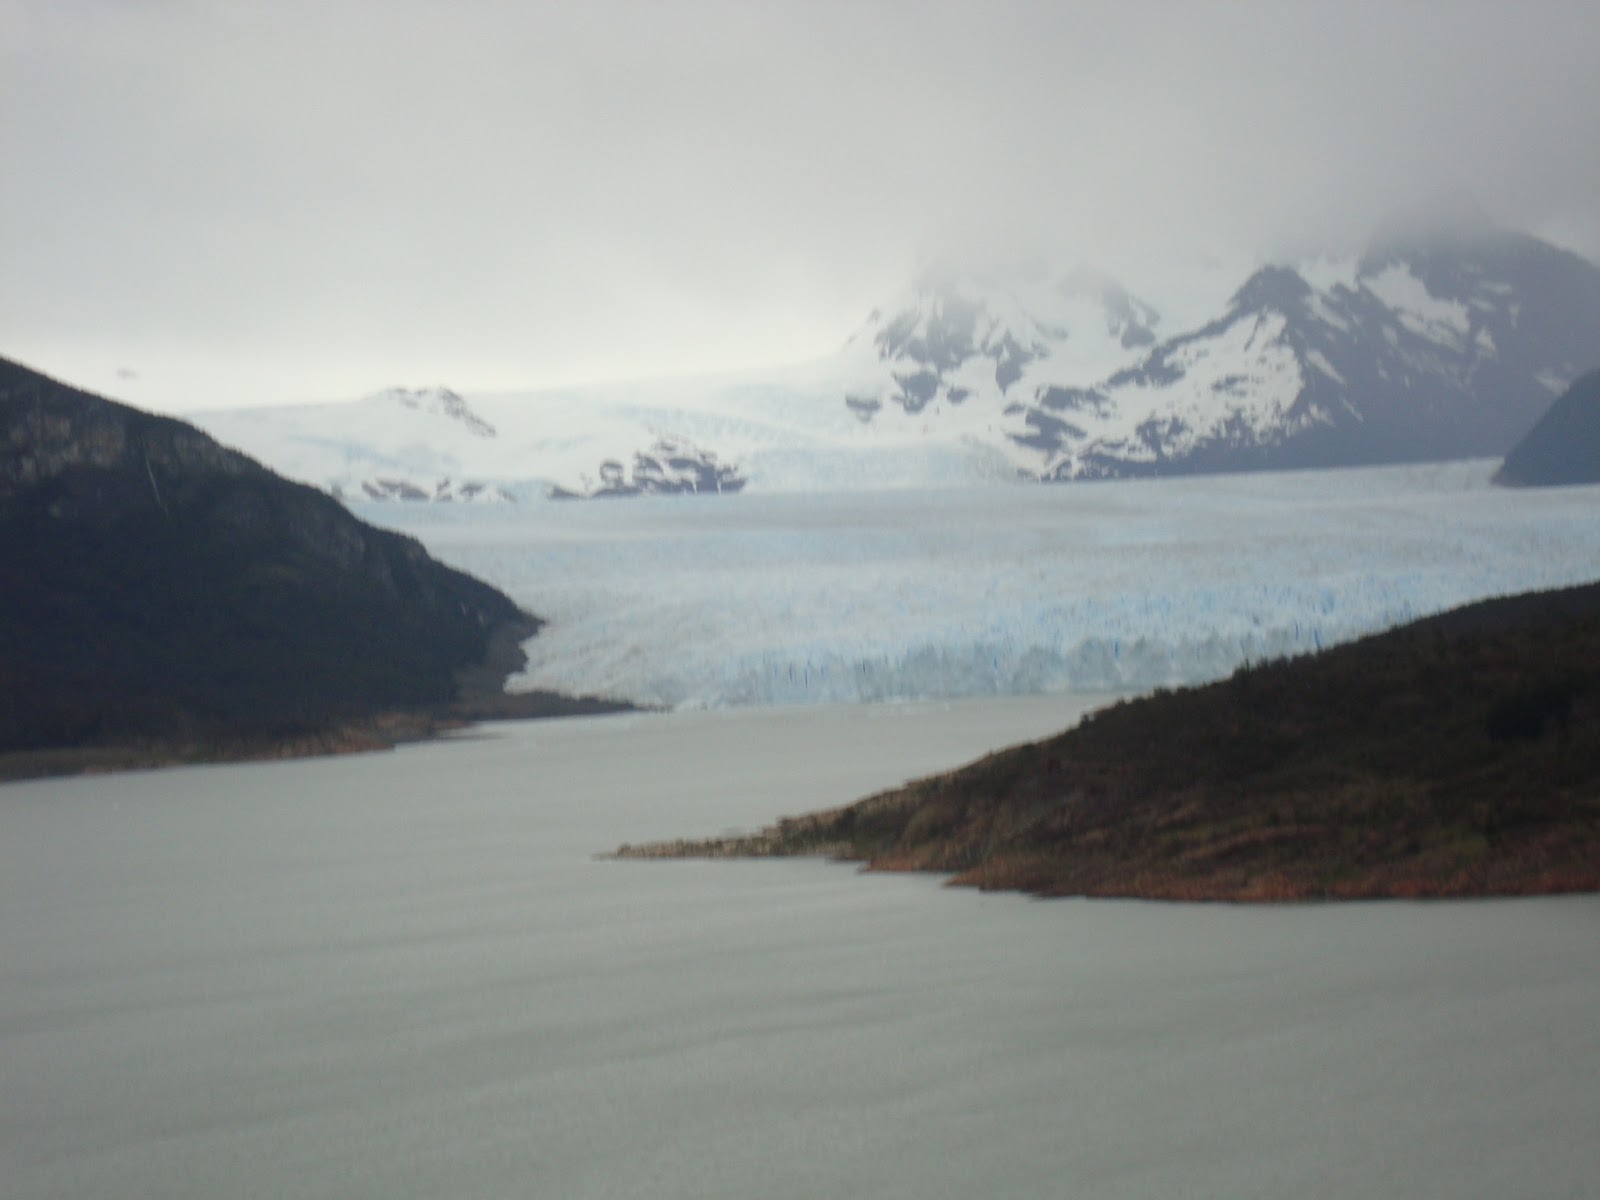 El glaciar Perito Moreno en Argentina. Esculturas en el hielo - EL AÑO DE LAS DOS PRIMAVERAS: 4 MESES VIVIENDO CHILE (2)